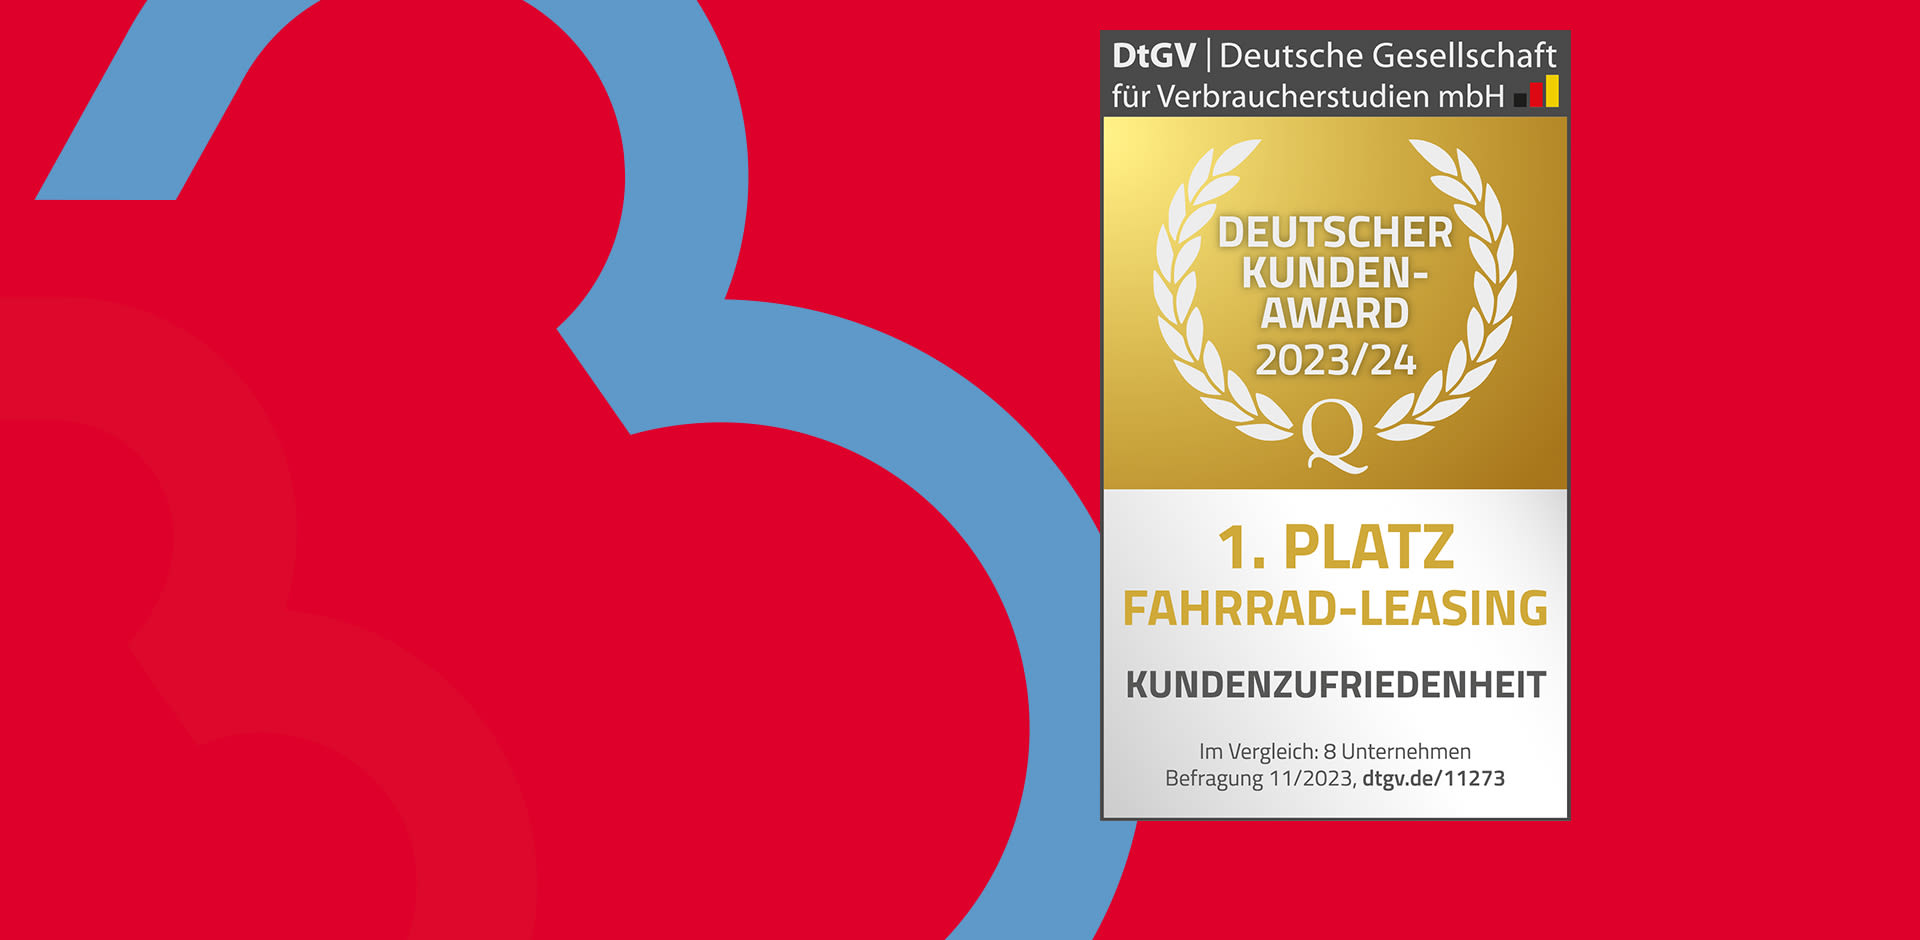 BusinessBike erhält den Deutschen Kunden-Award 2023/24.